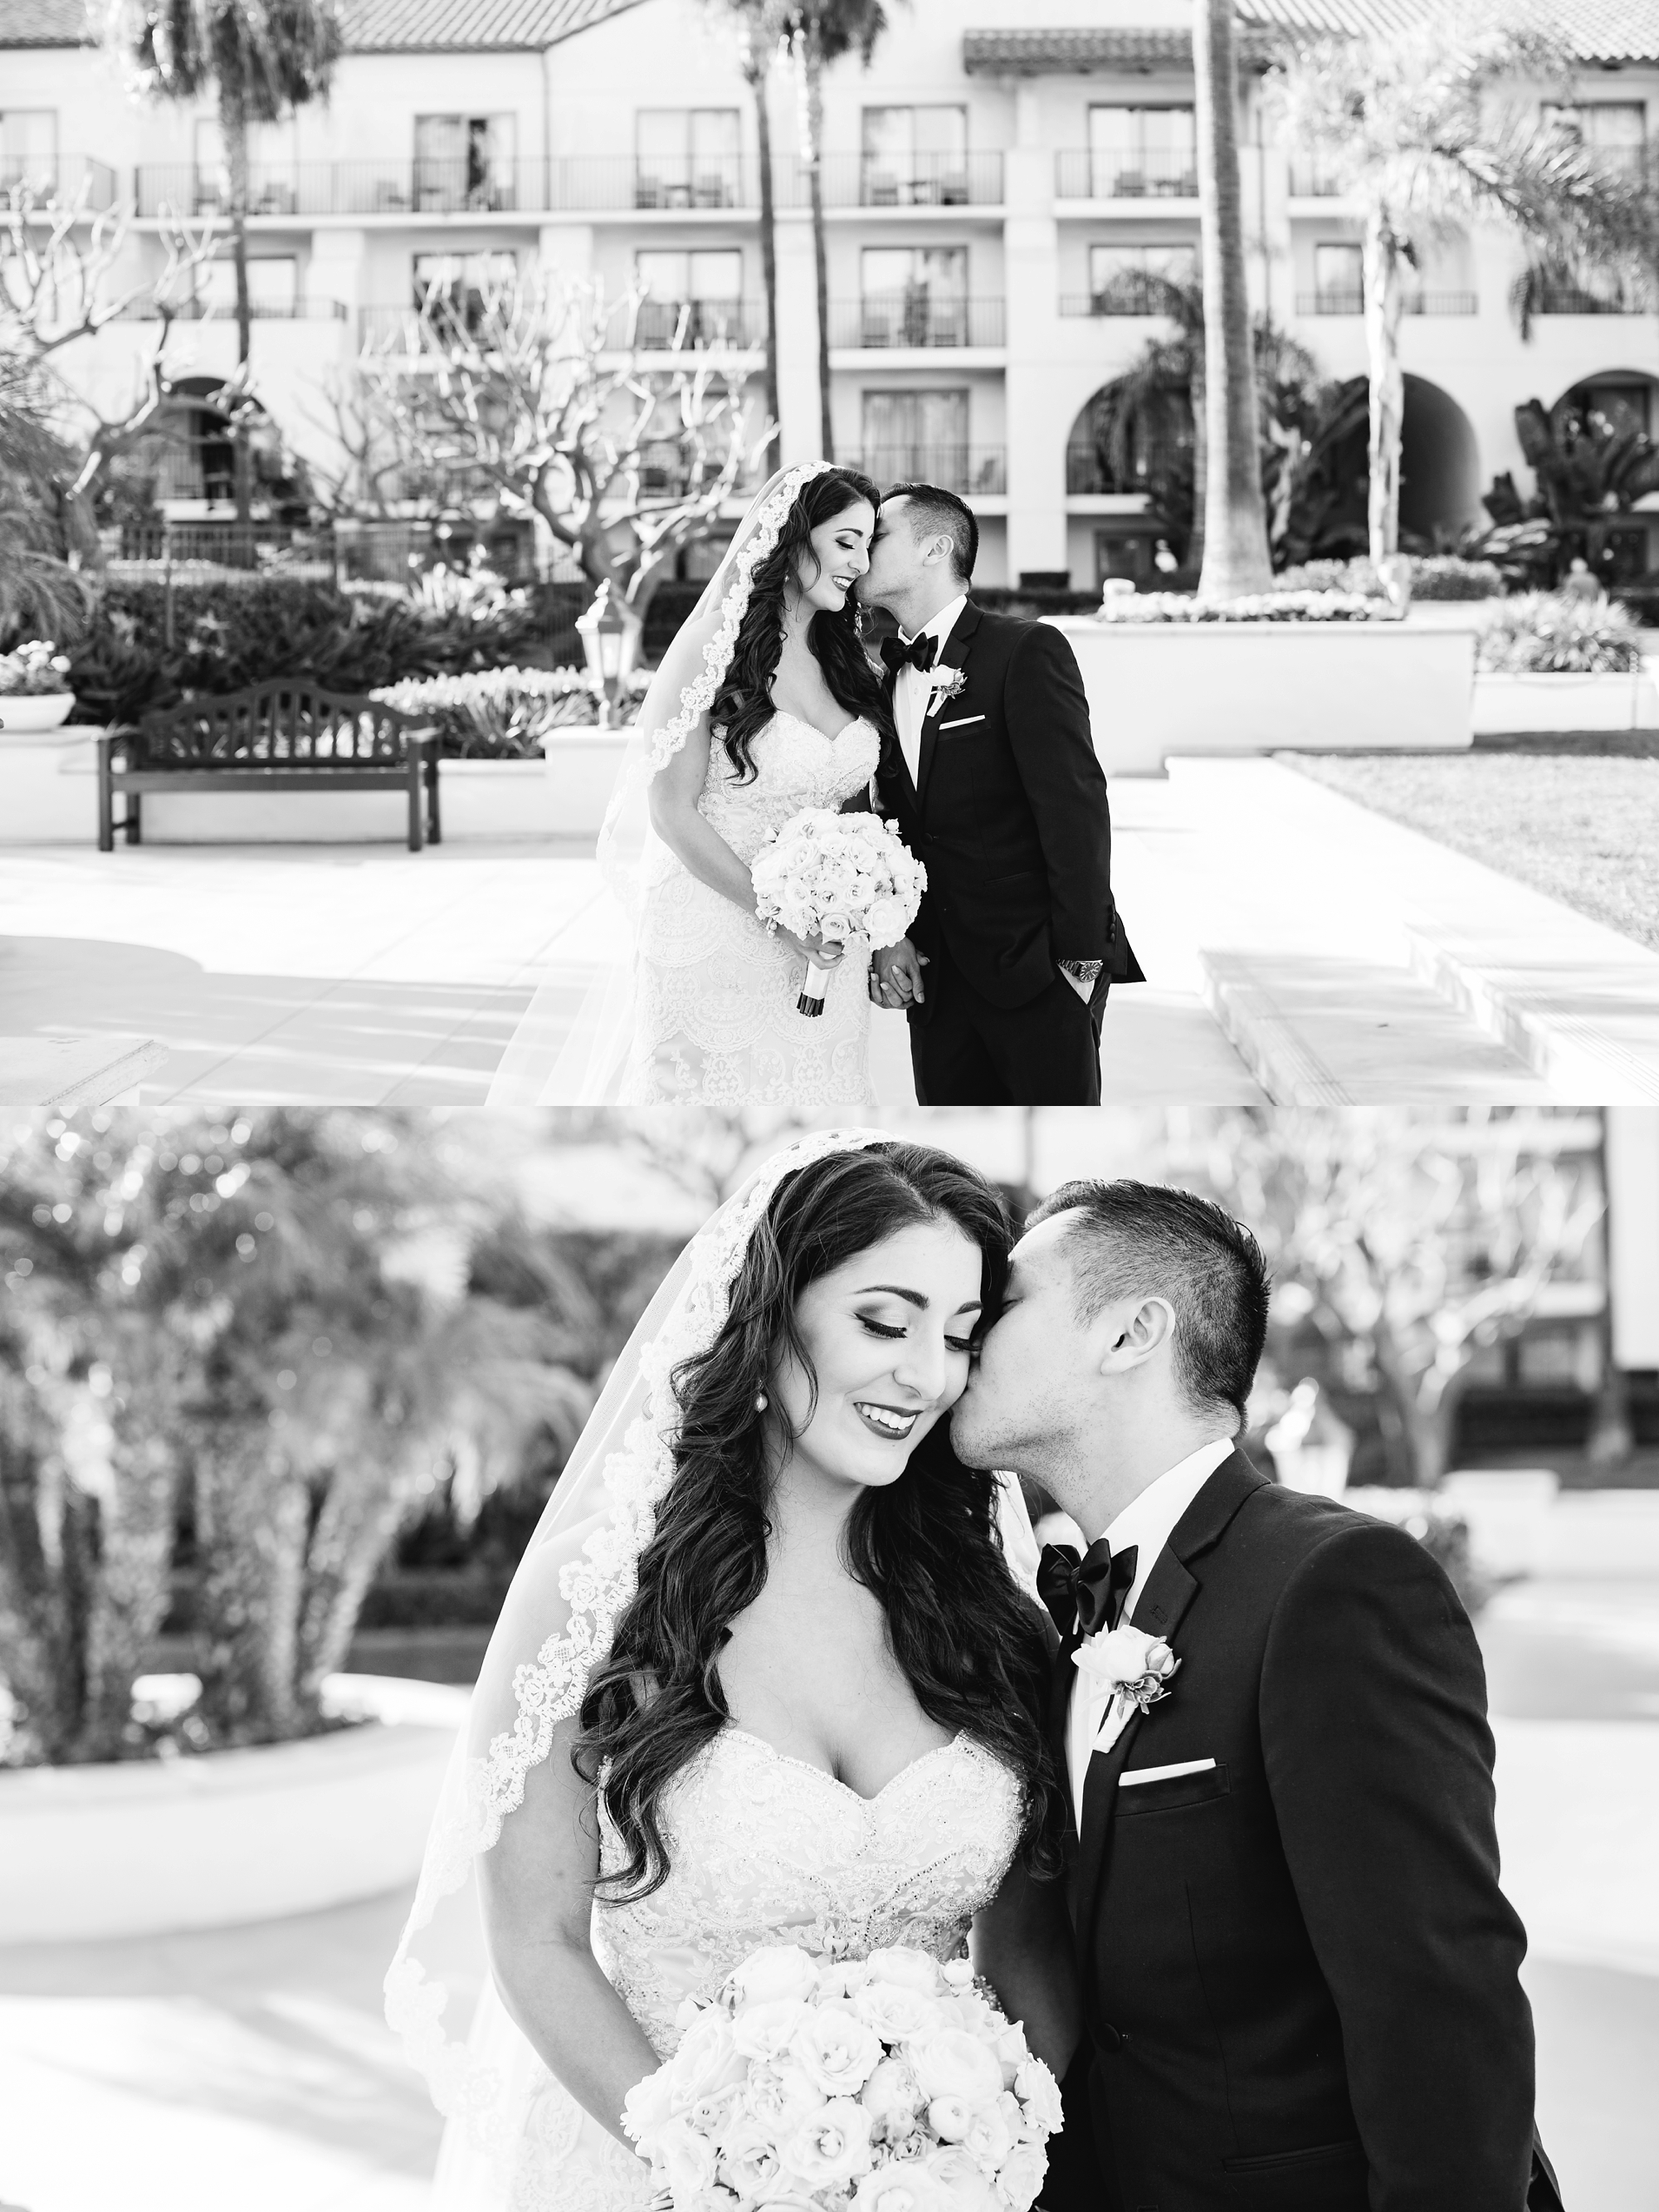 Romantic Bride and Groom Photos - Orange County Wedding Photographer